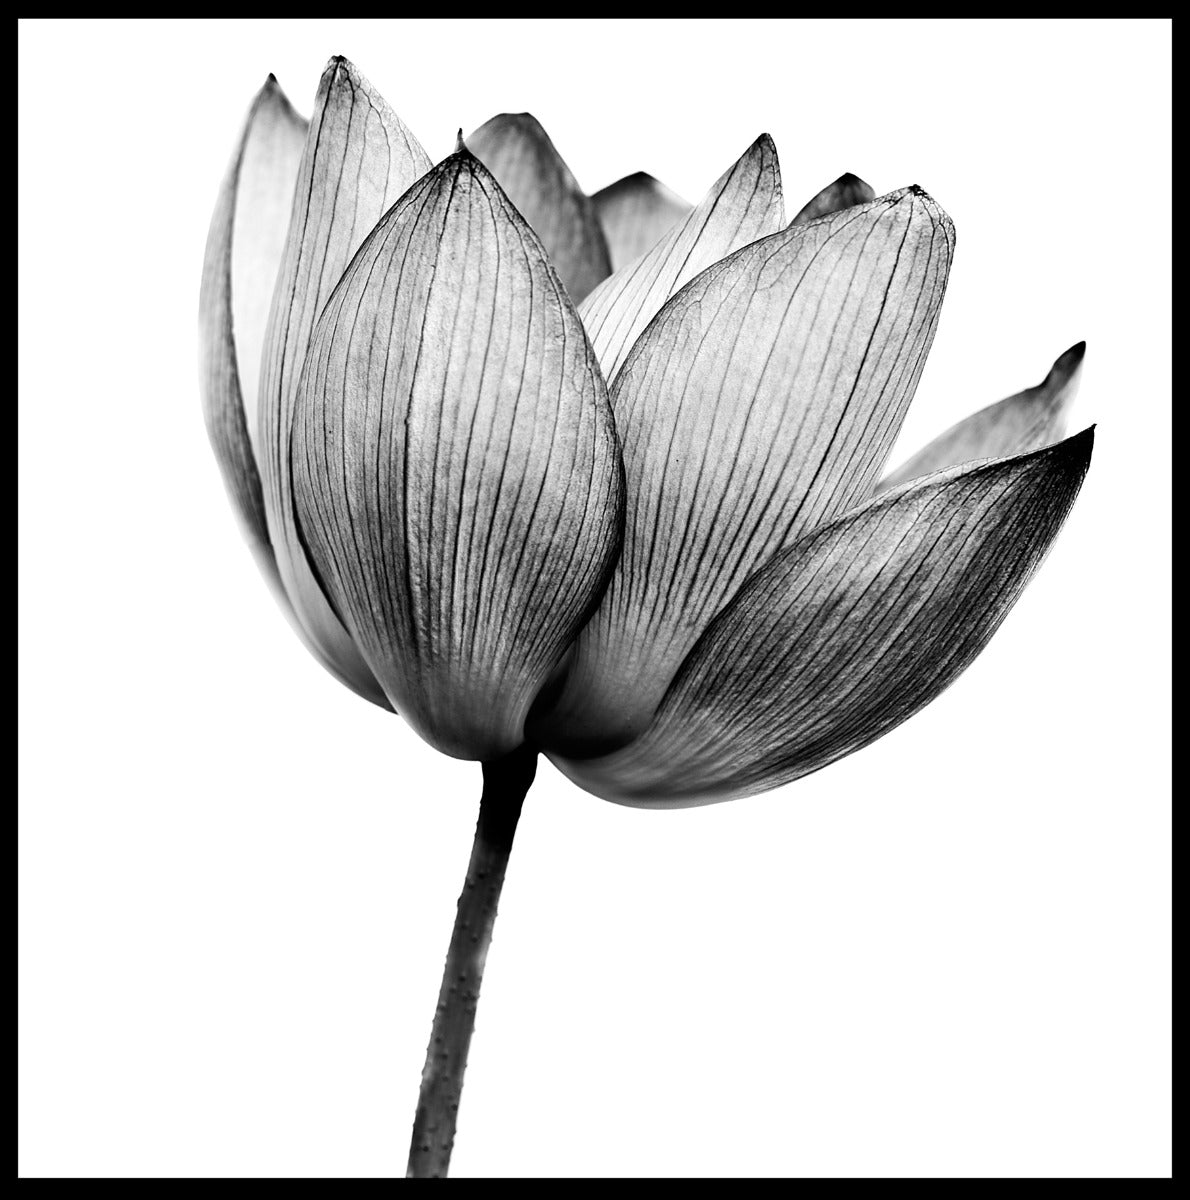  Lotus zwart-wit poster